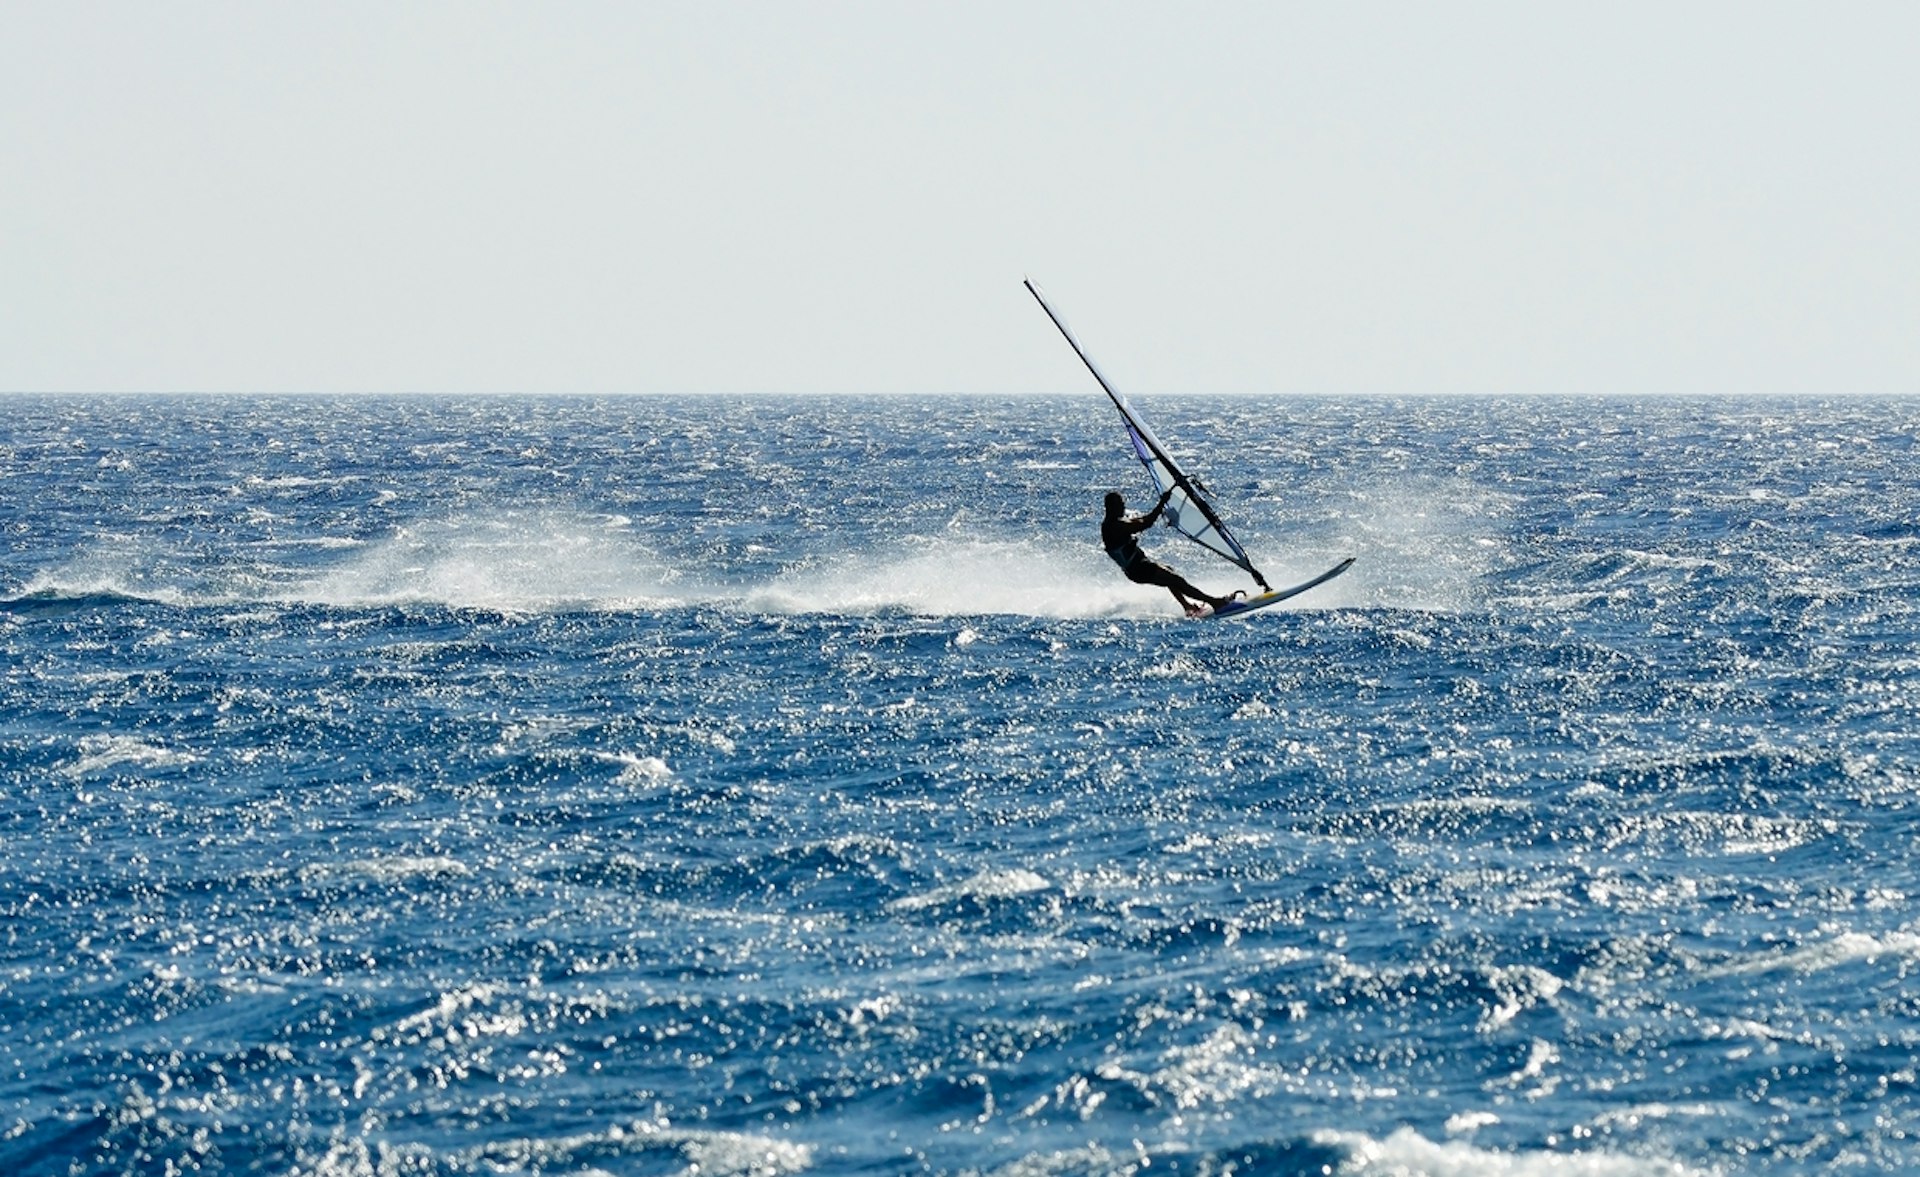 A windsurfer speeds over choppy waters